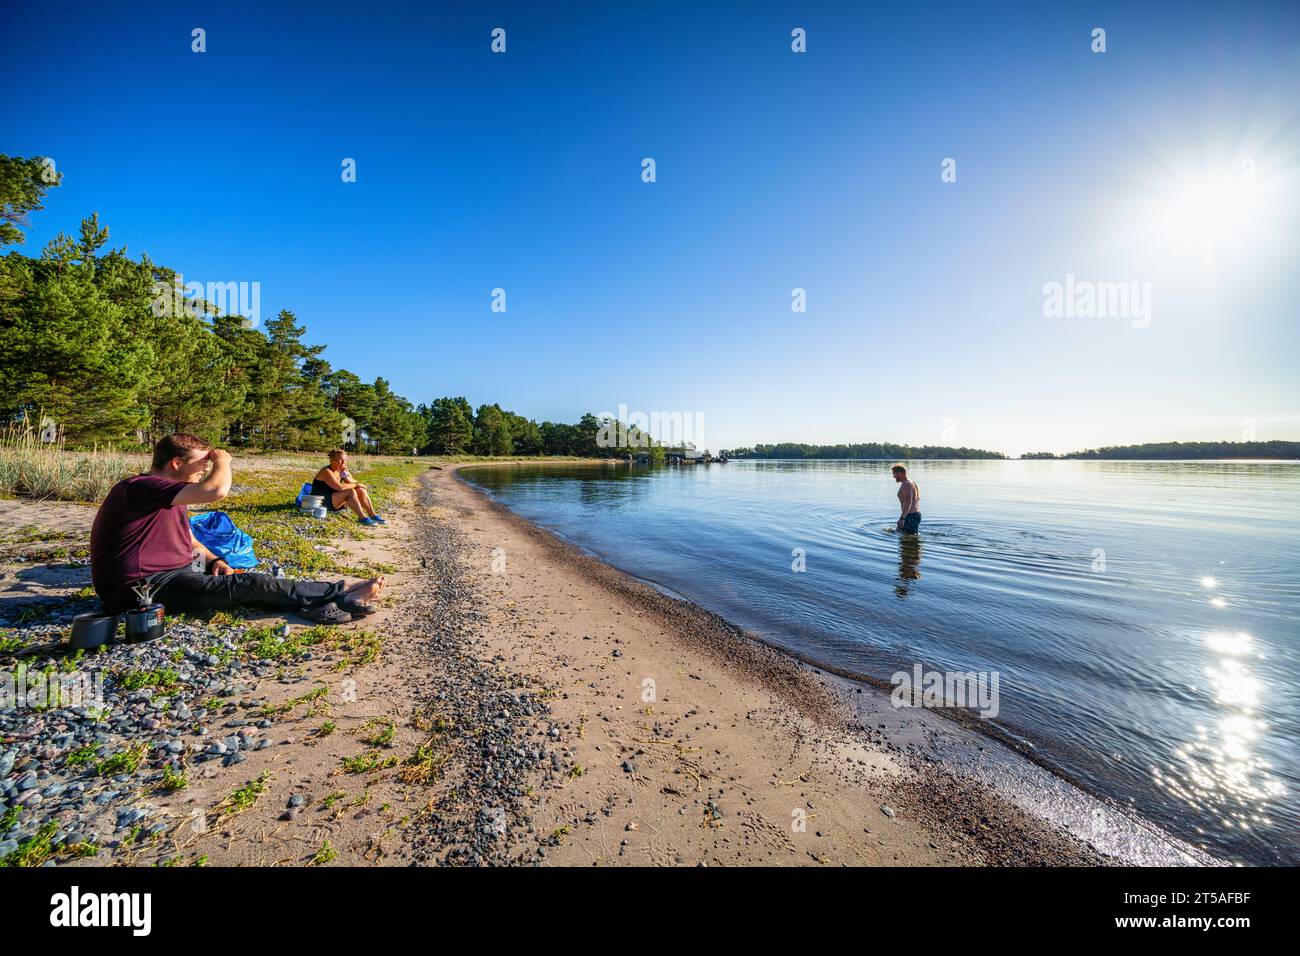 Une matinée ensoleillée sur l'île de Norra Sandö, Porvoo, Finlande Banque D'Images